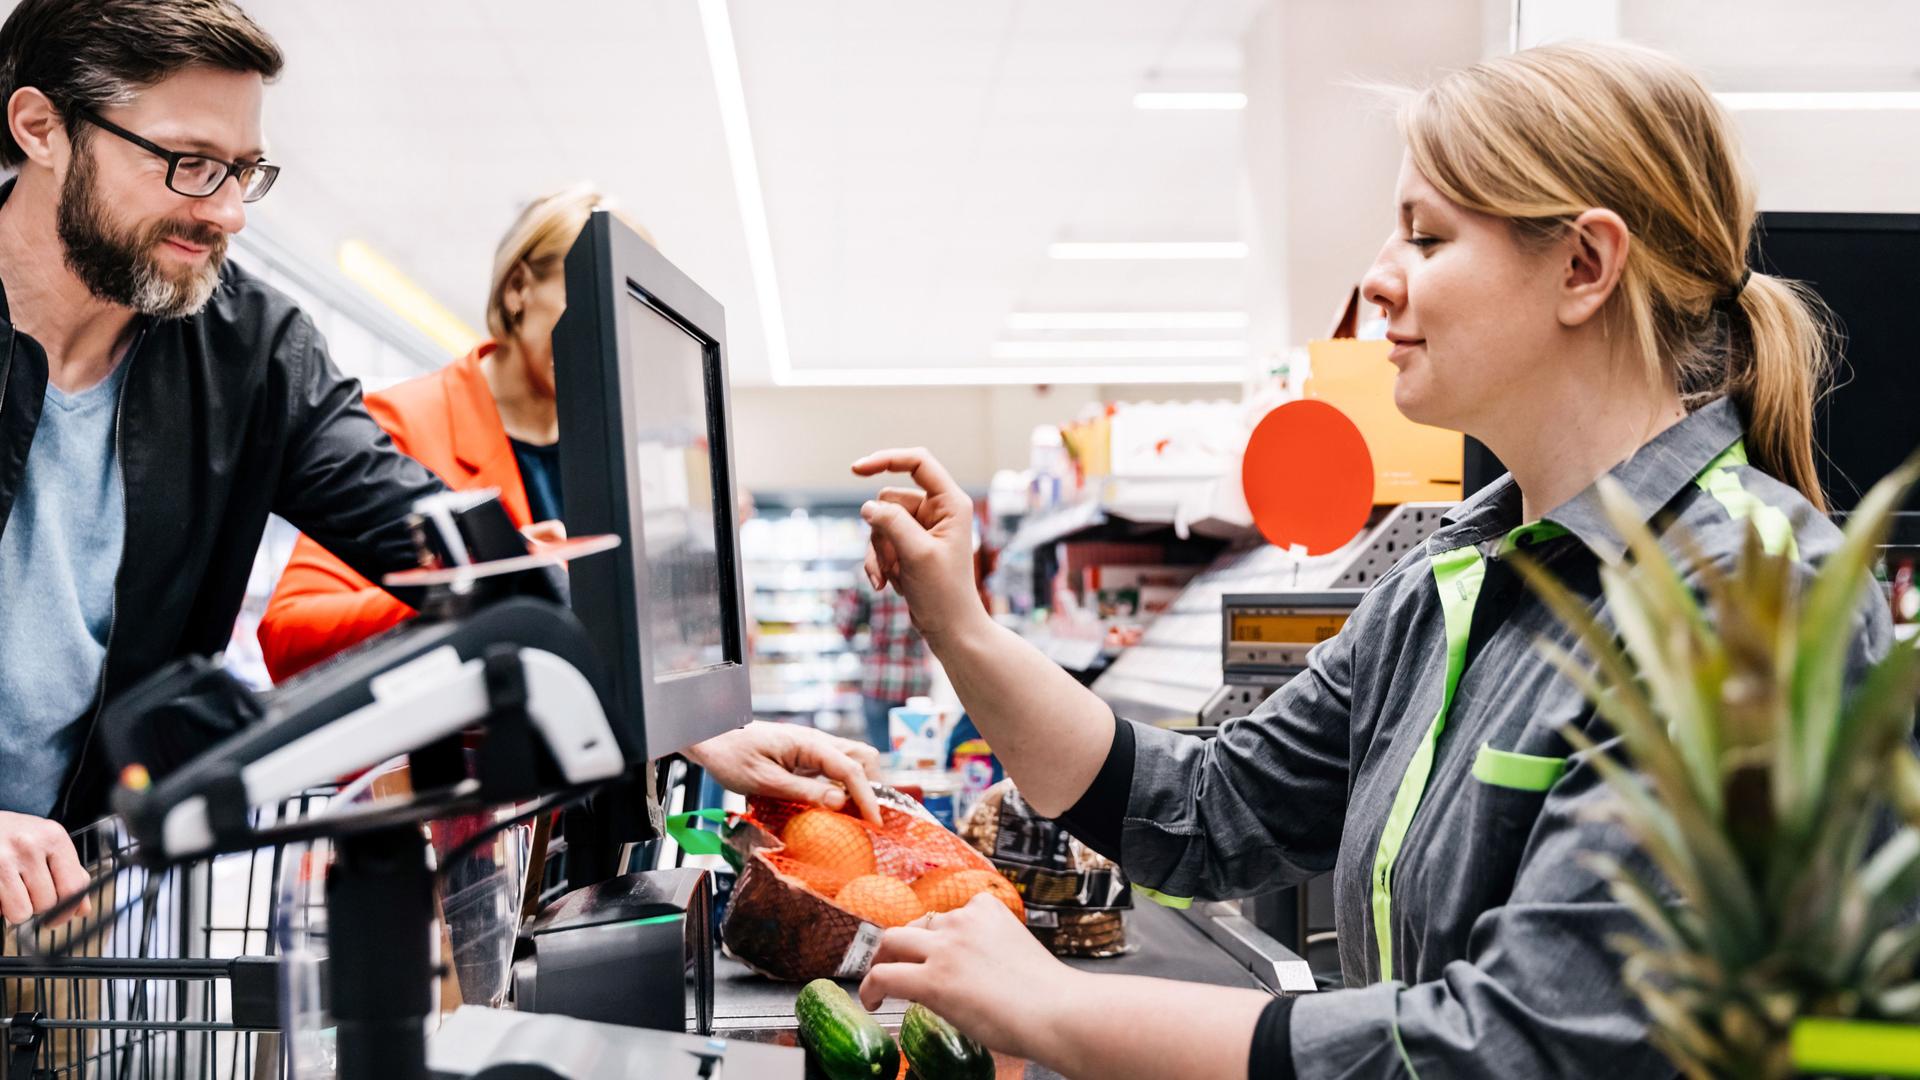 Ein Supermarktkassiererin tippt auf einen Bildschirm während zwei Gurken auf dem Scanner liegen. Ein männlicher Kunde legt derweil Waren auf das Band.